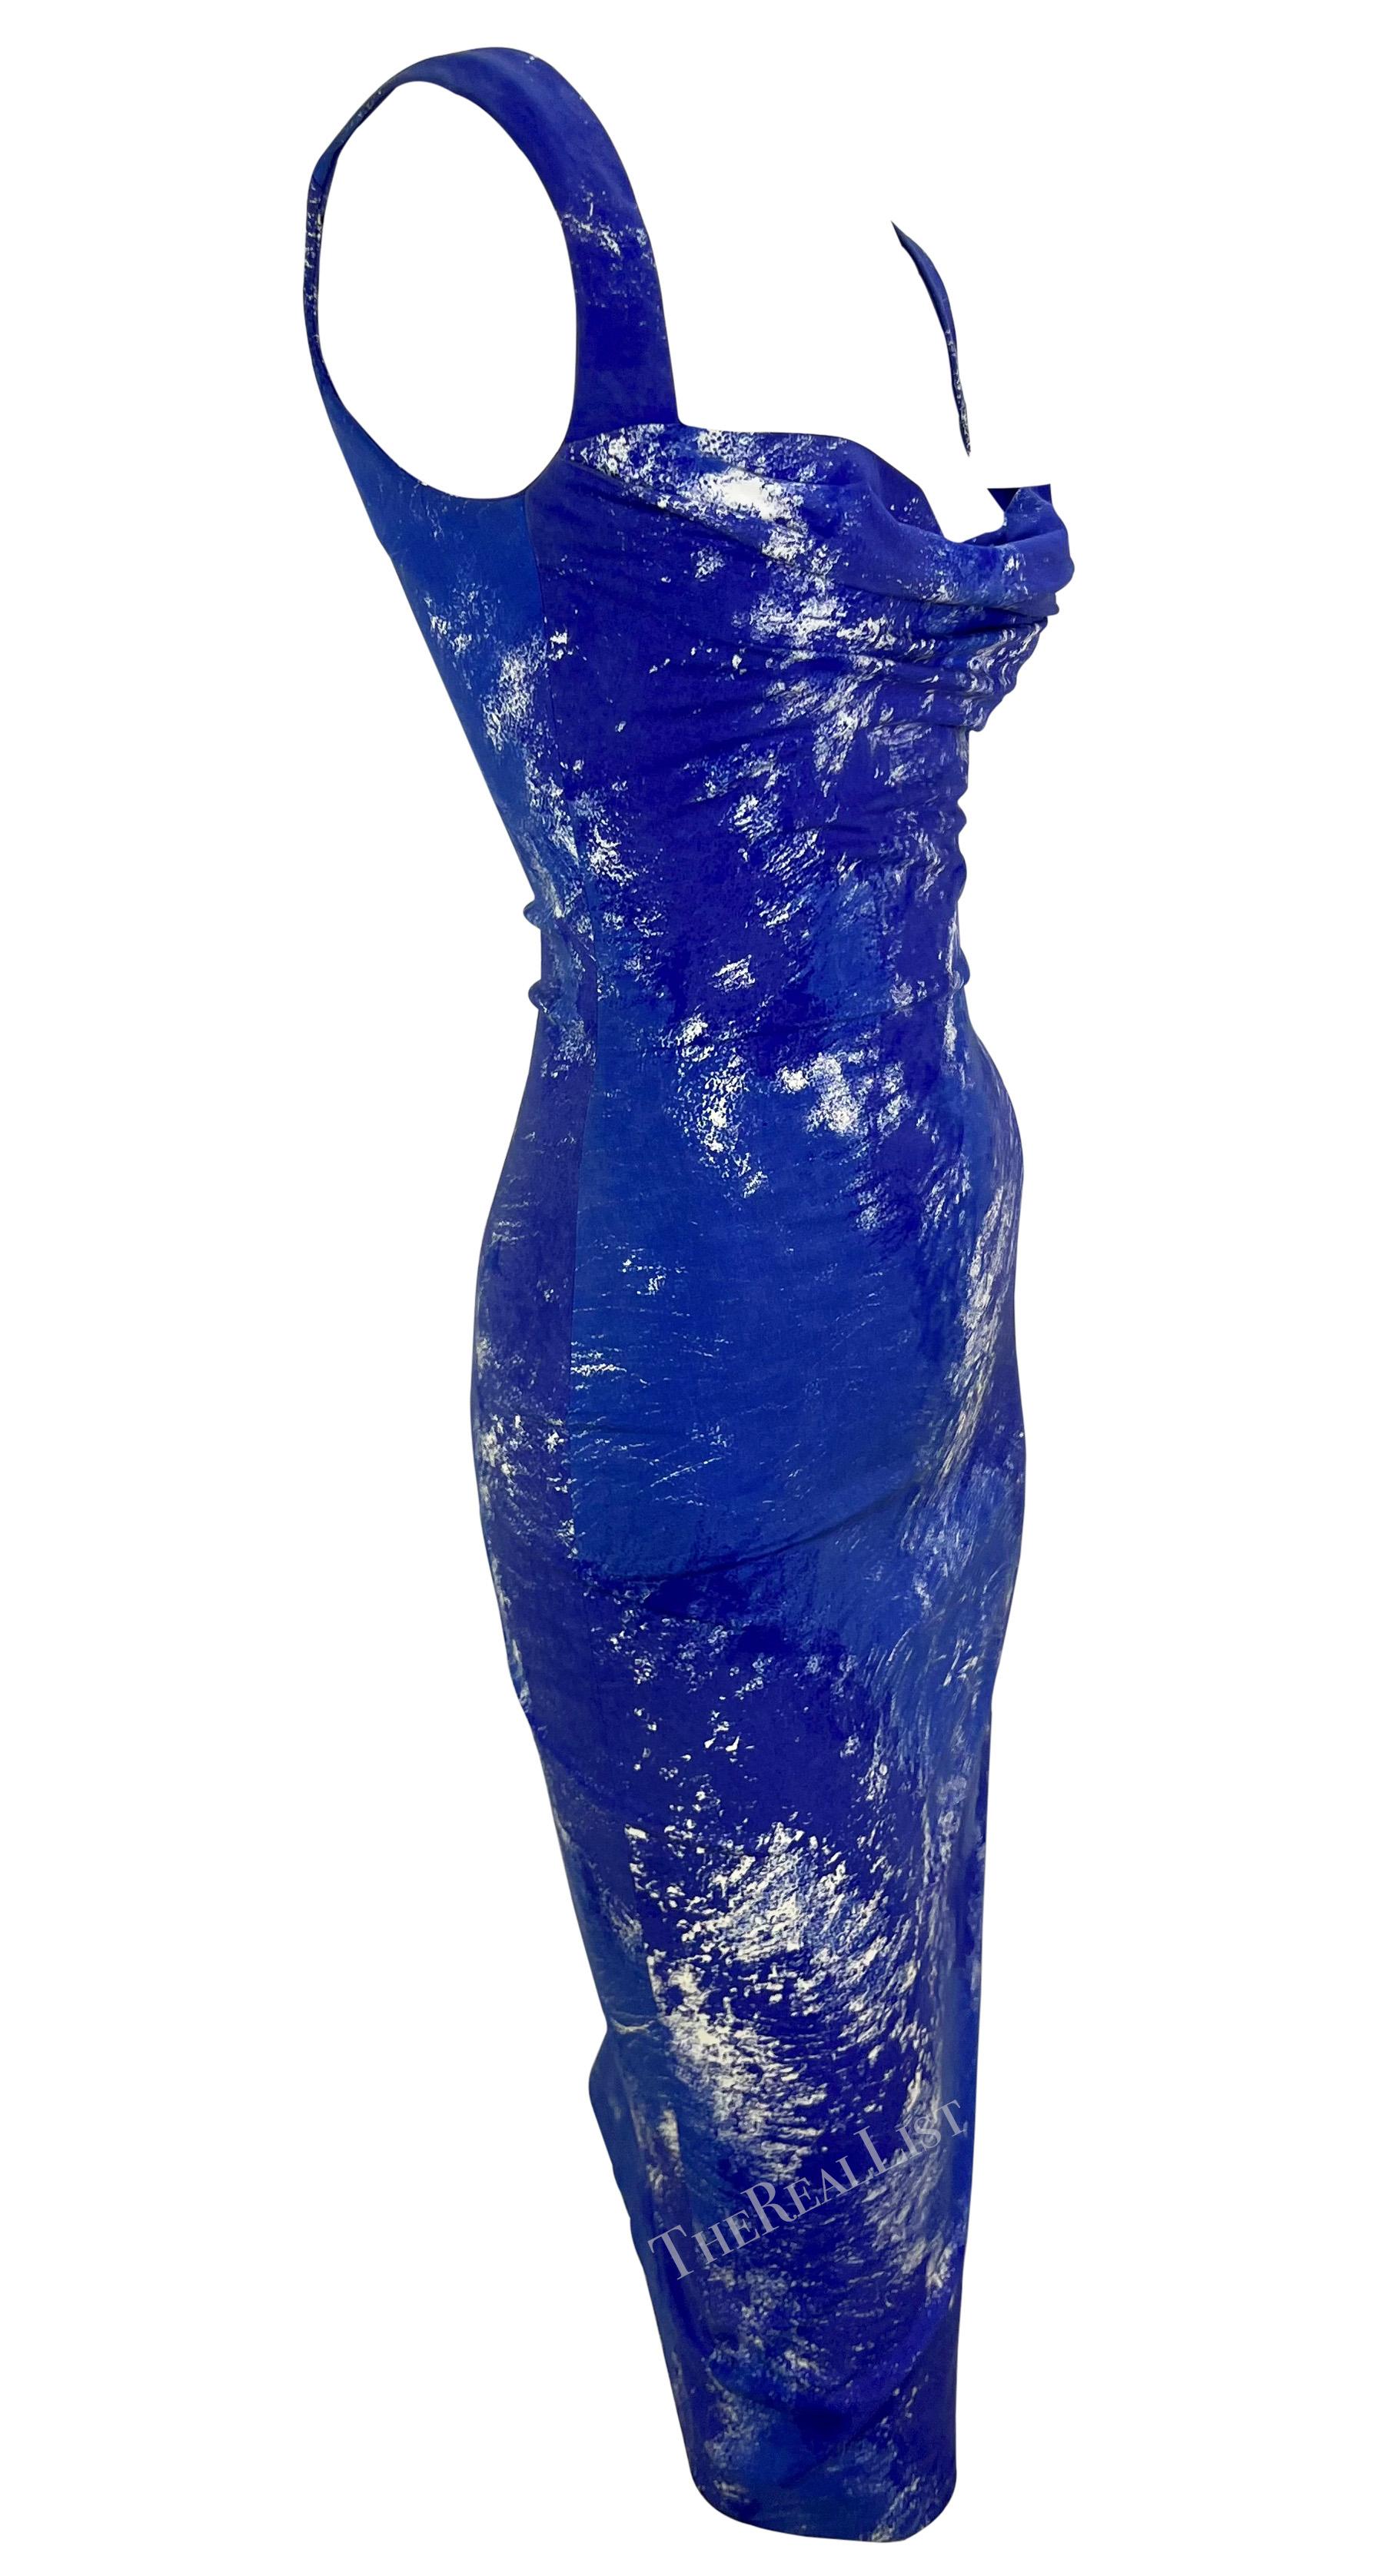 S/S 1999 Vivienne Westwood 'La Belle Hélène' Runway Corseted Blue White Dress For Sale 5